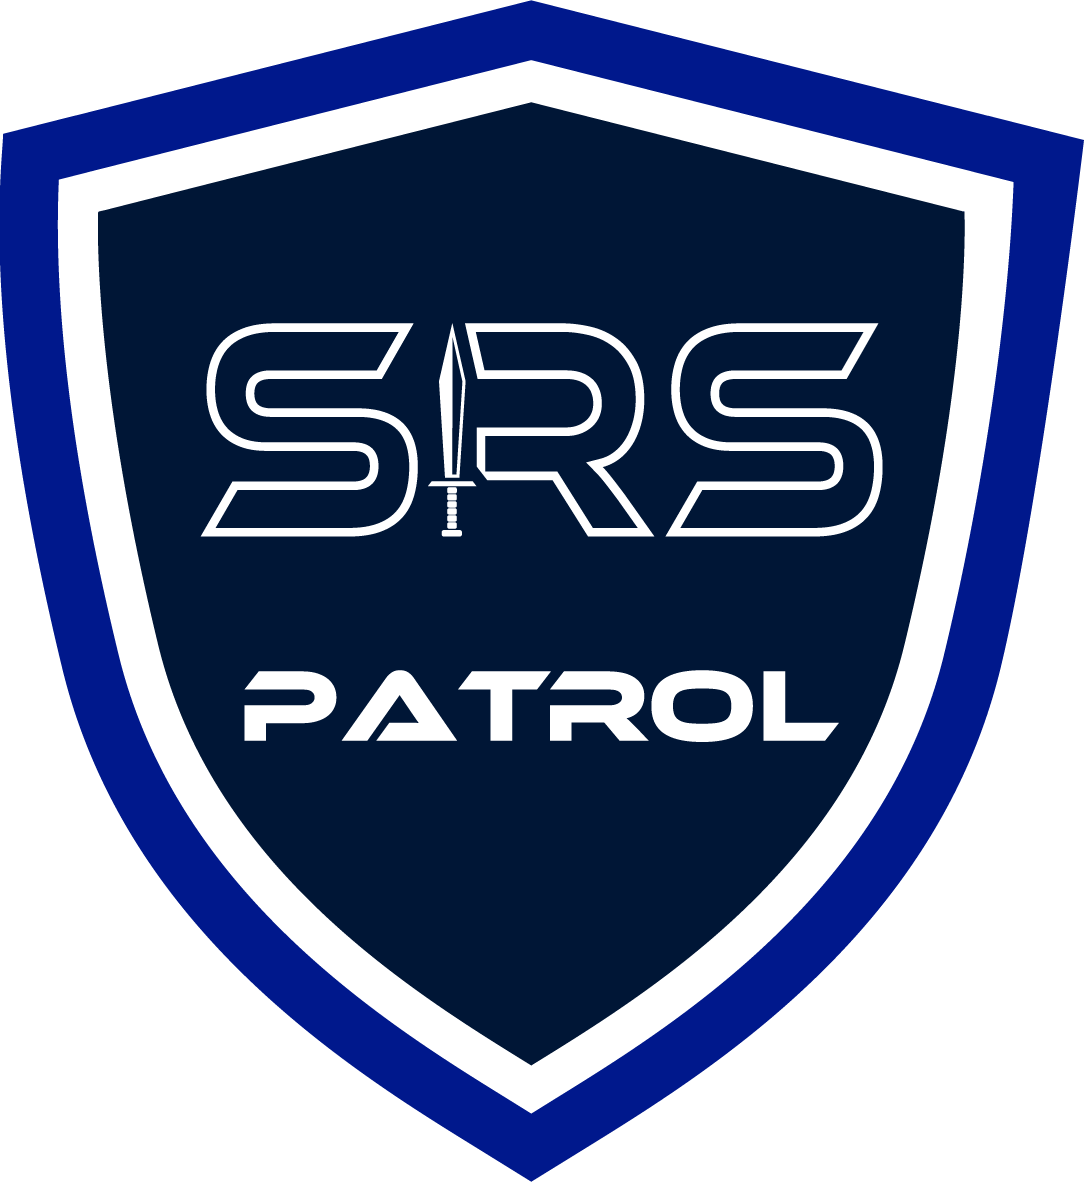 SRS Patrol